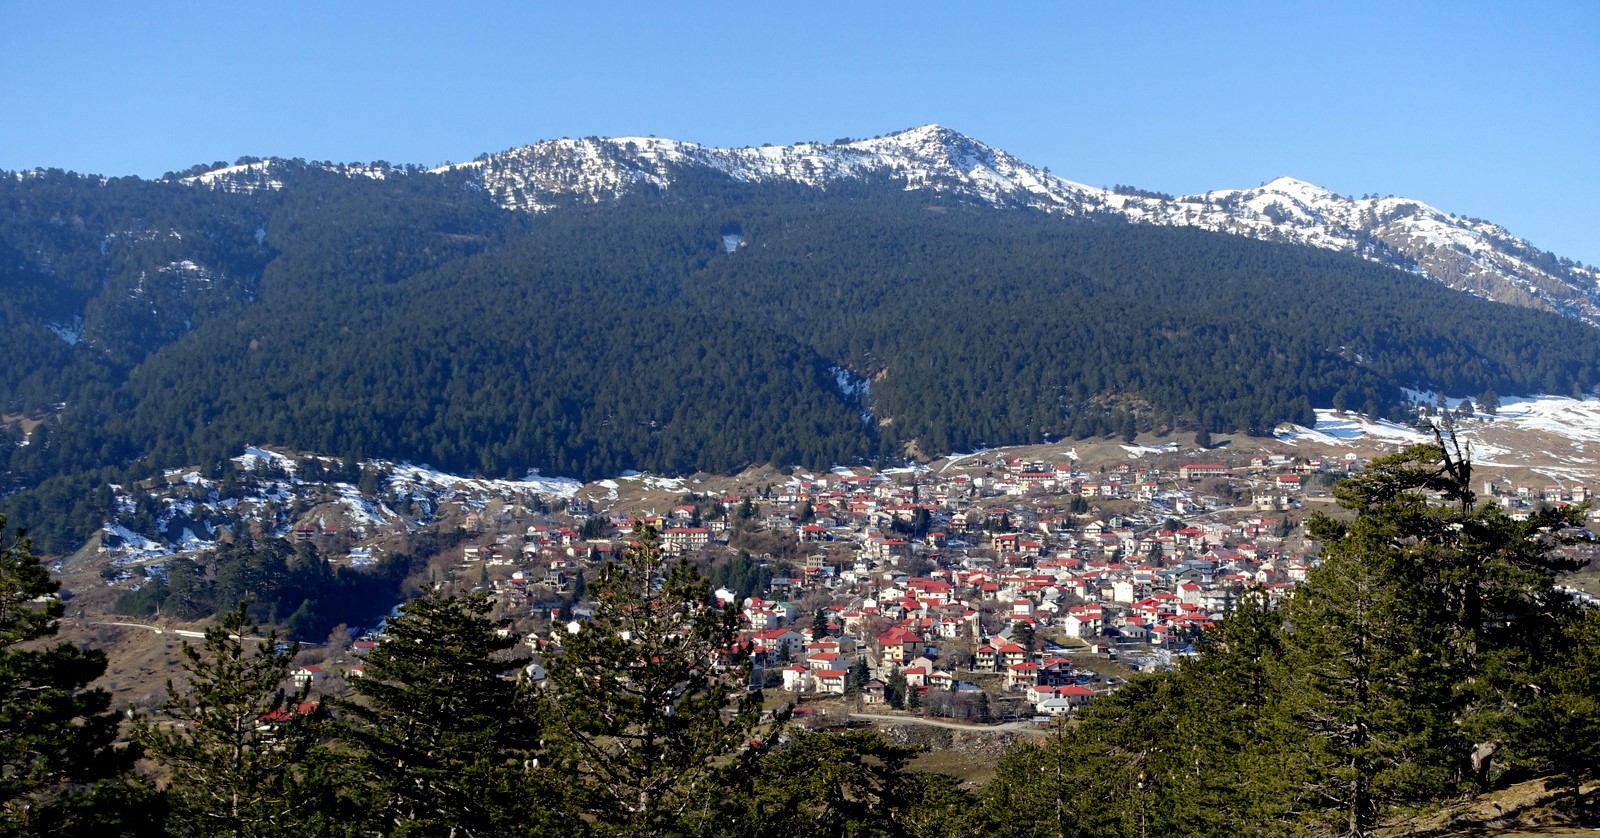 Σαμαρίνα: Το ελληνικό χωριό που θεωρείται το ψηλότερο των Βαλκανίων